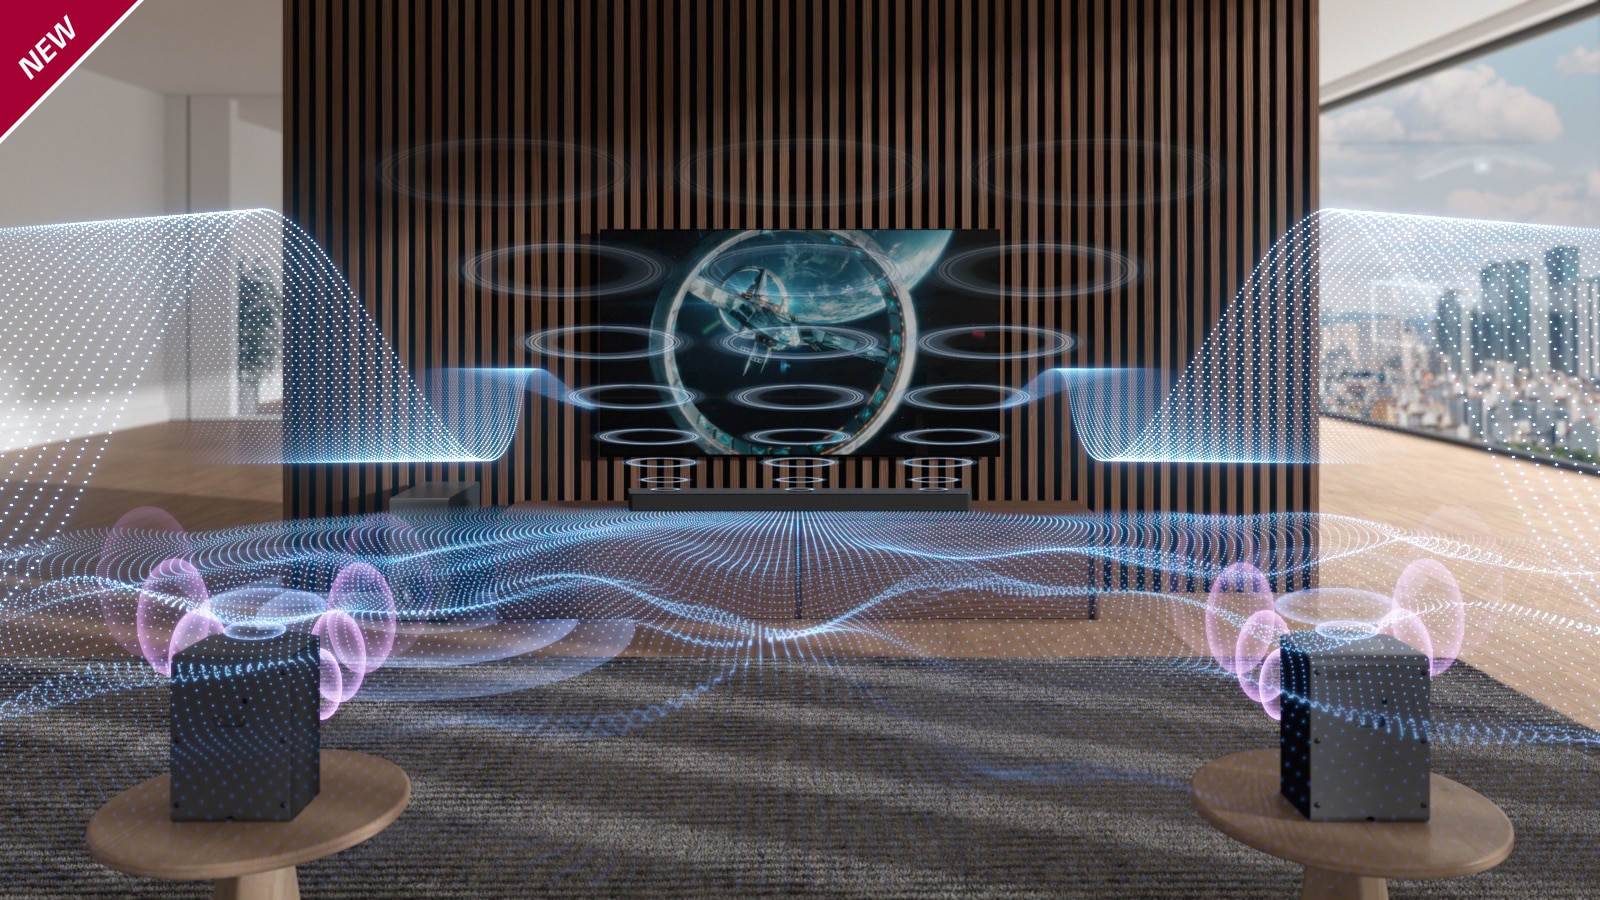 Des ondes sonores bleues de formes variées sont émises par la barre de son et le téléviseur. La mention « NOUVEAU » est indiquée dans le coin supérieur gauche.